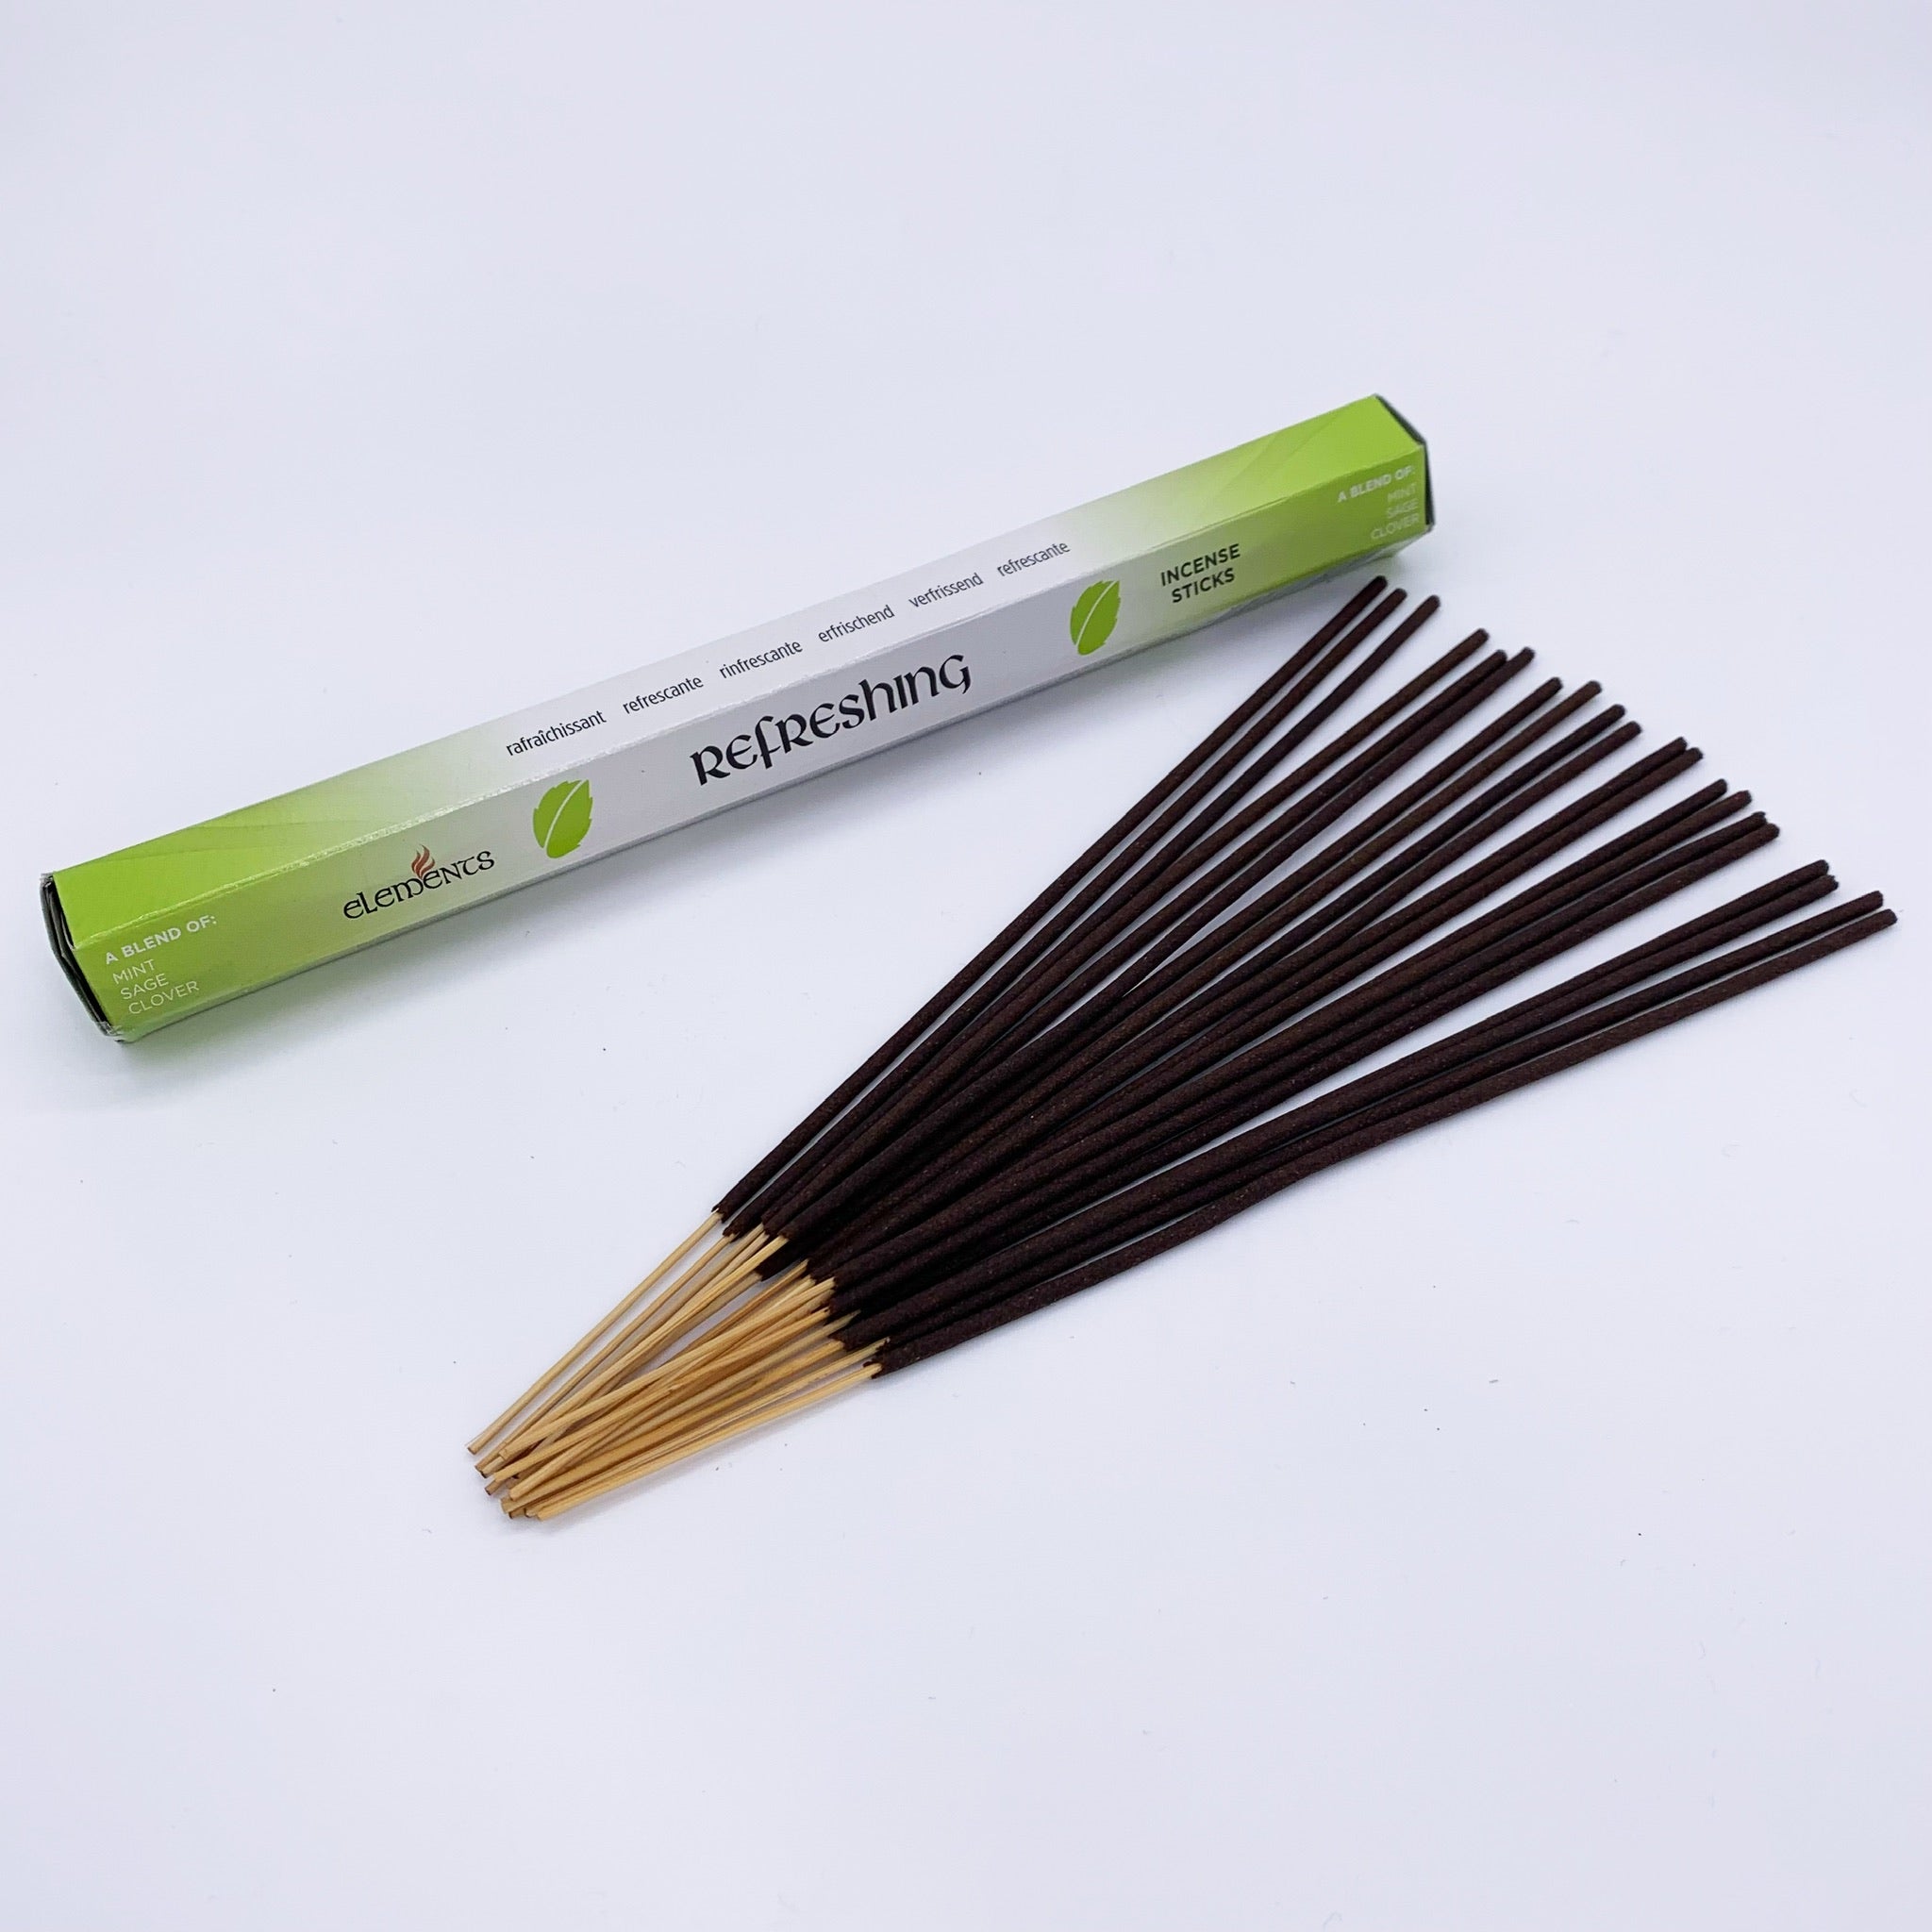 Refreshing Incense Sticks